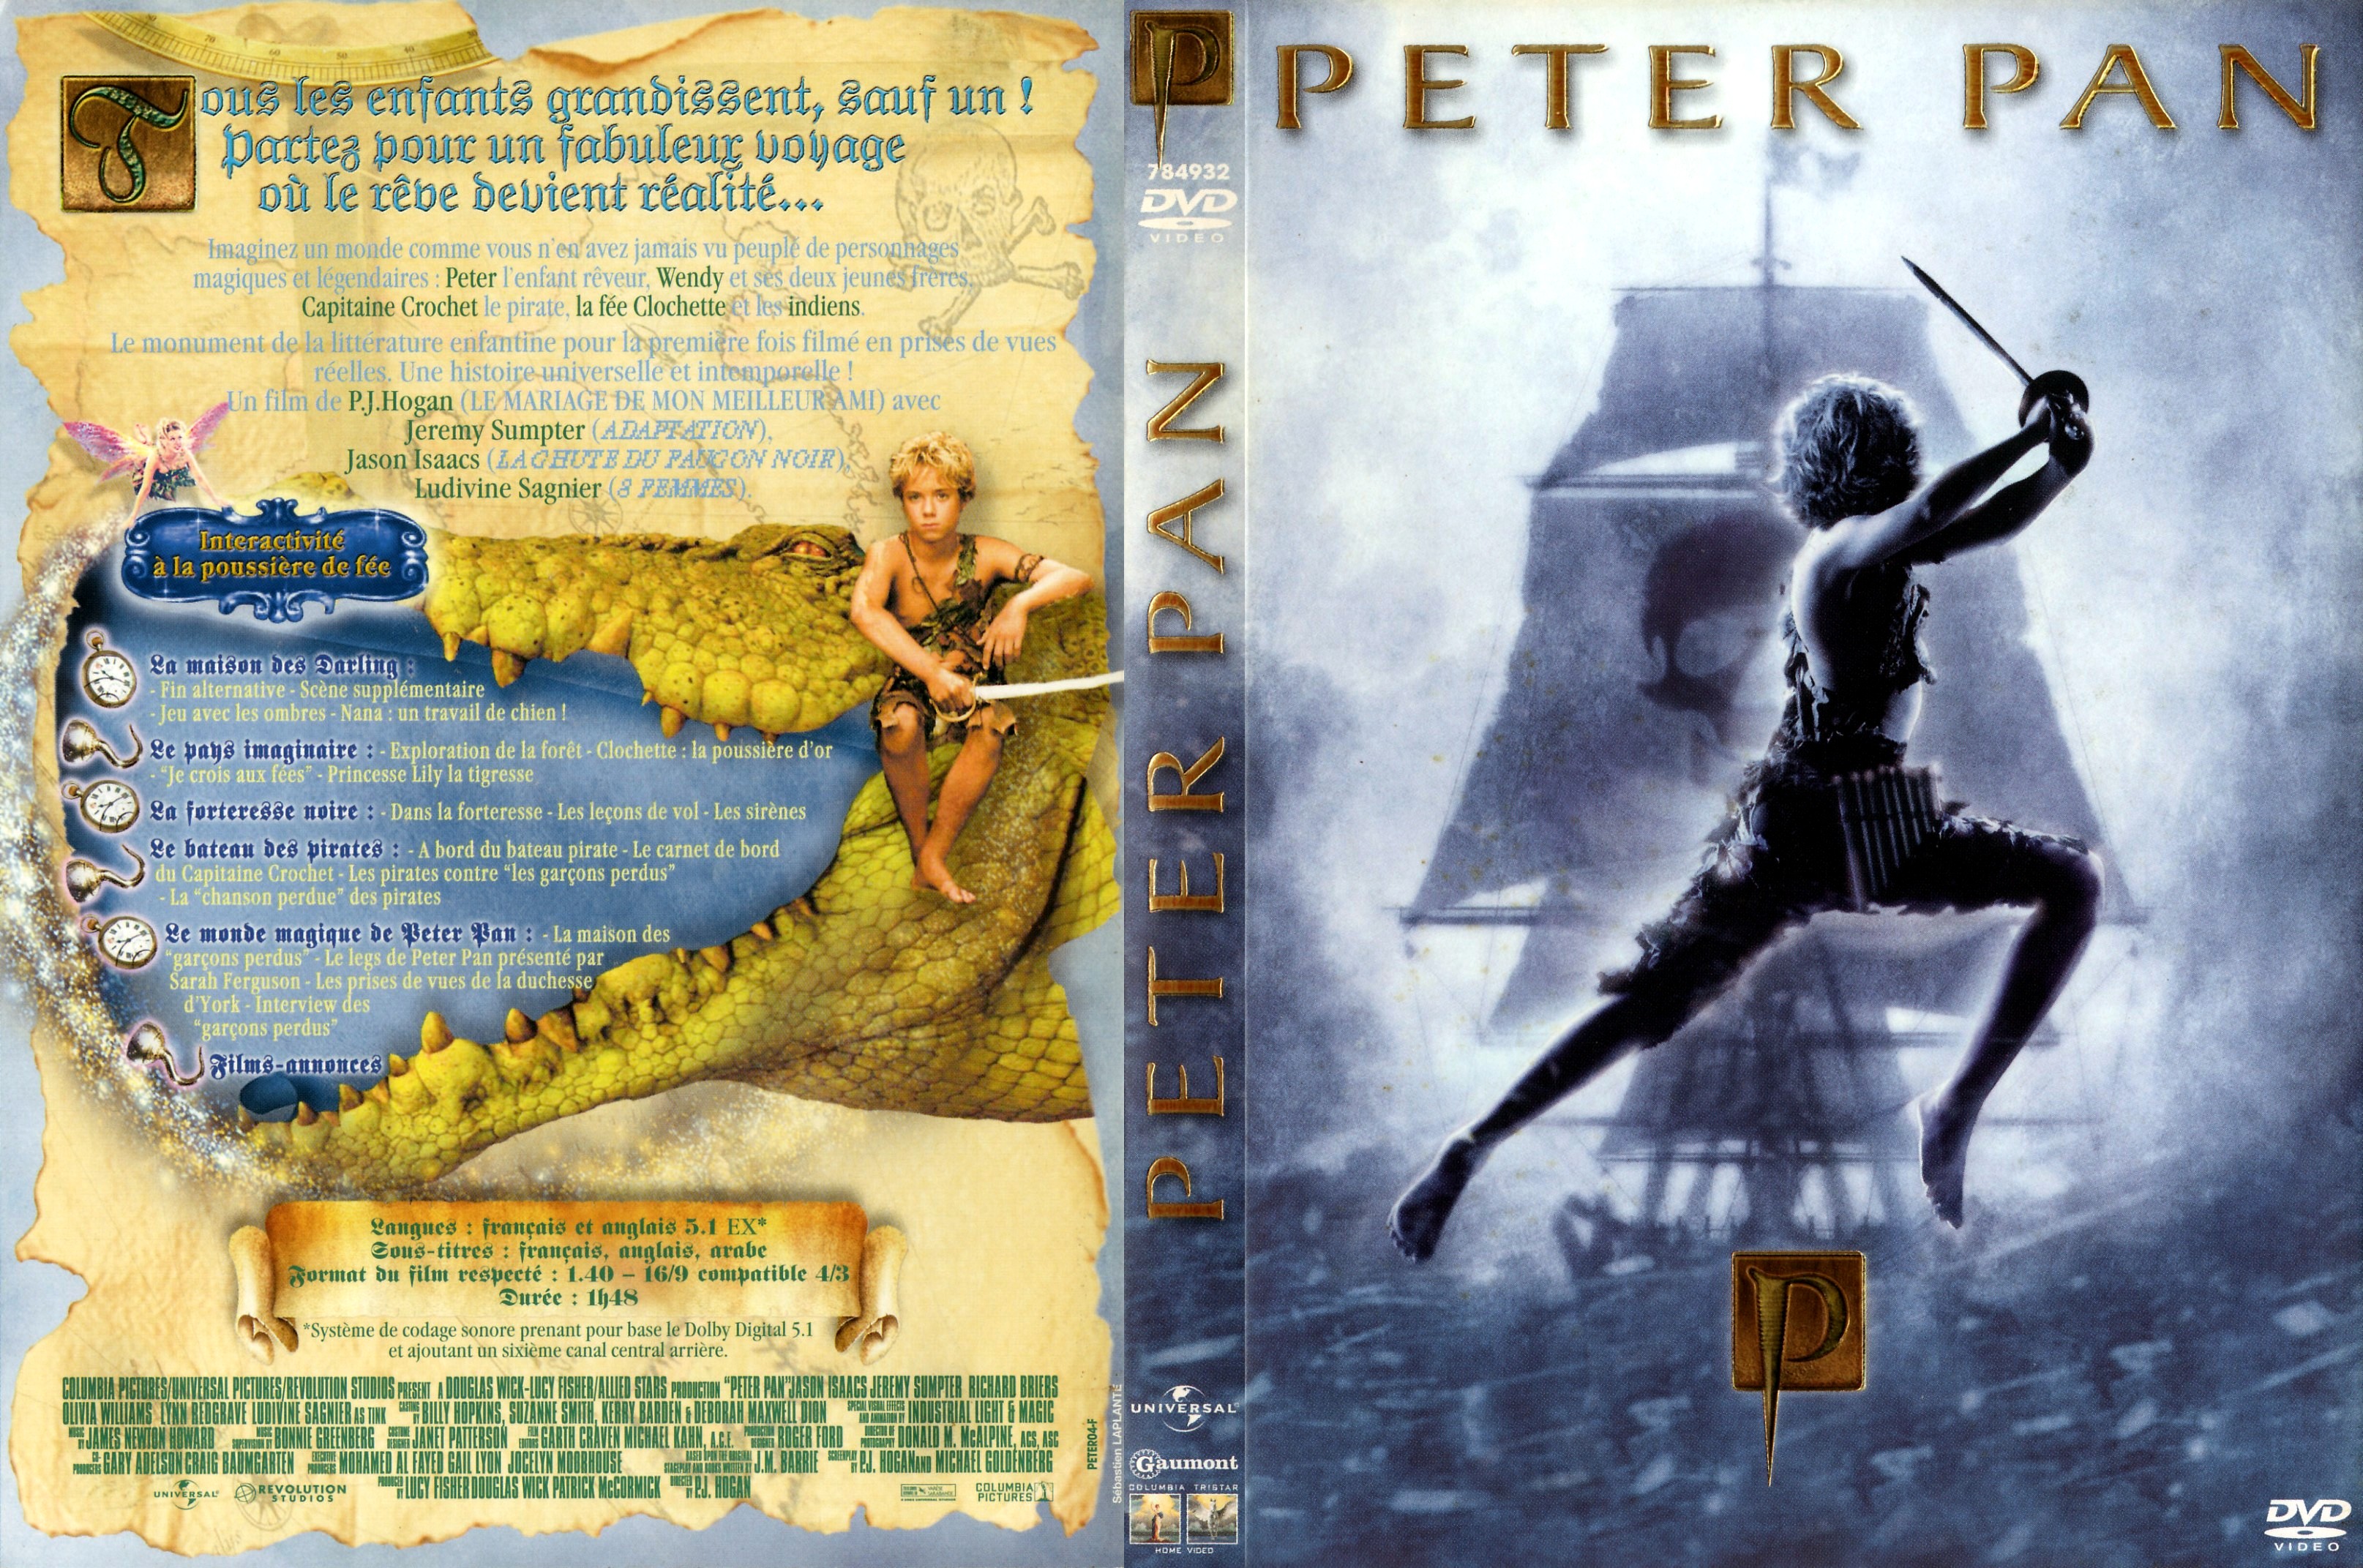 Jaquette DVD Peter Pan Le Film v3